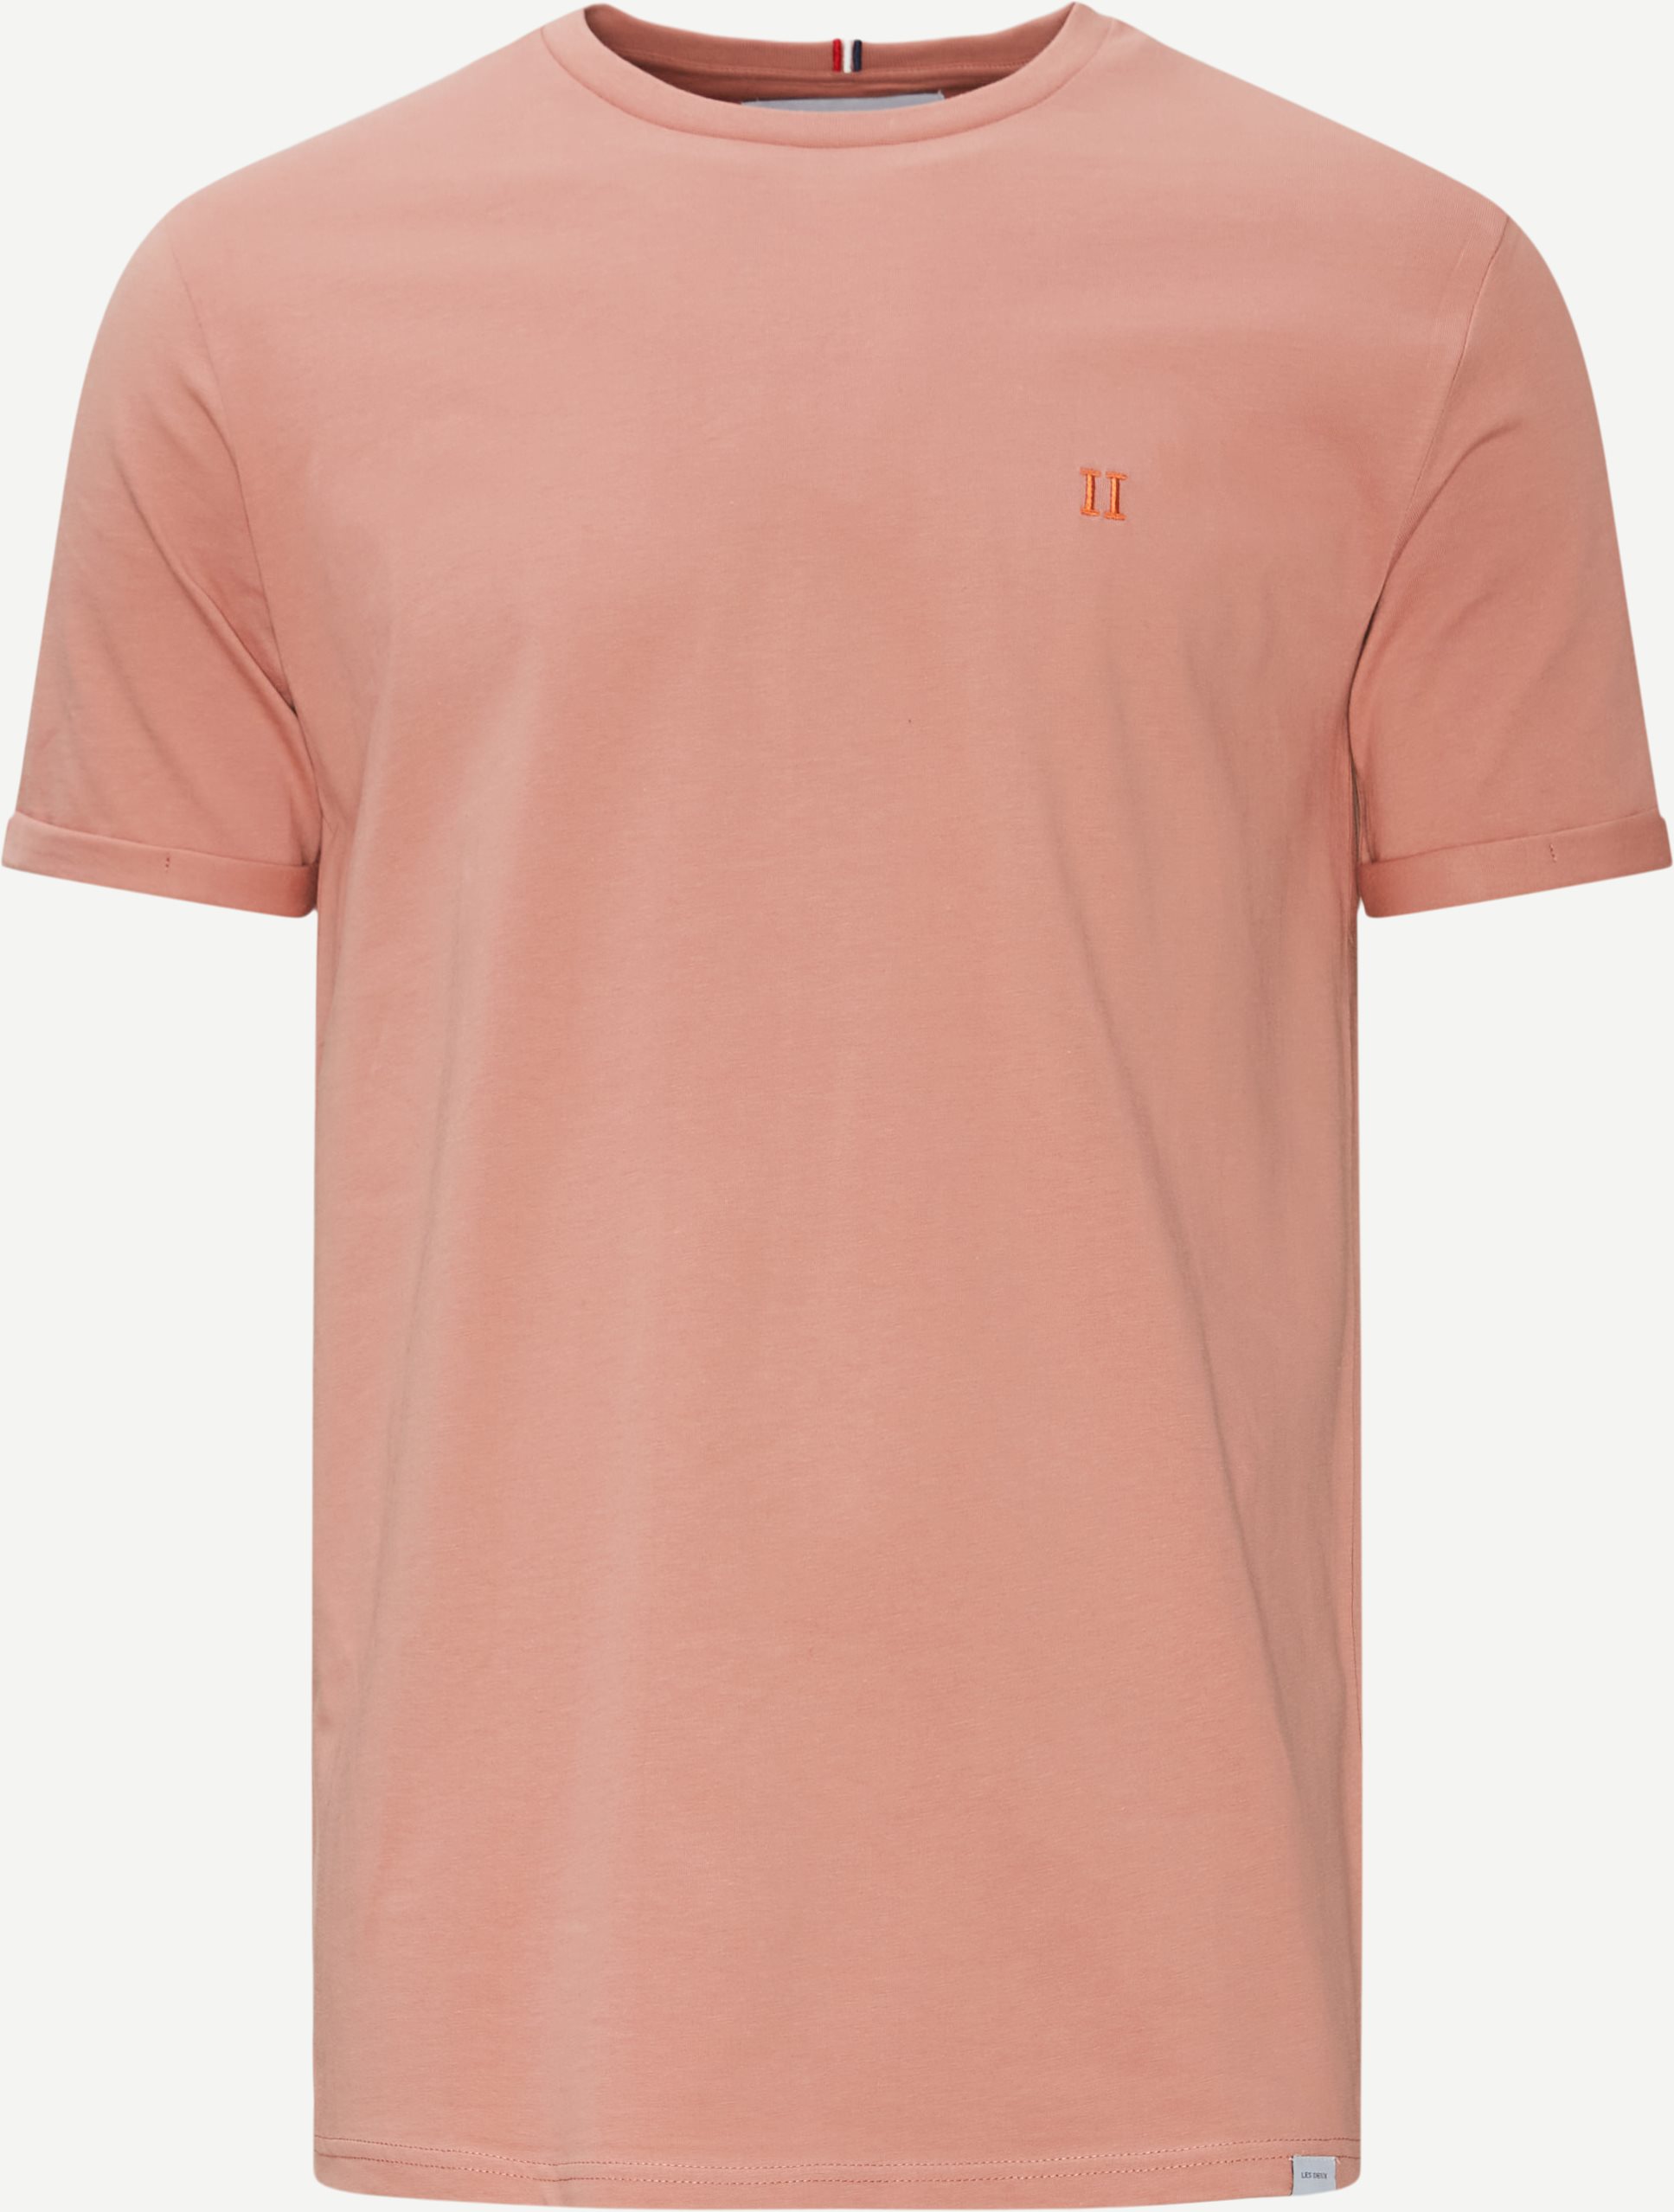 T-shirts - Regular fit - Rosa